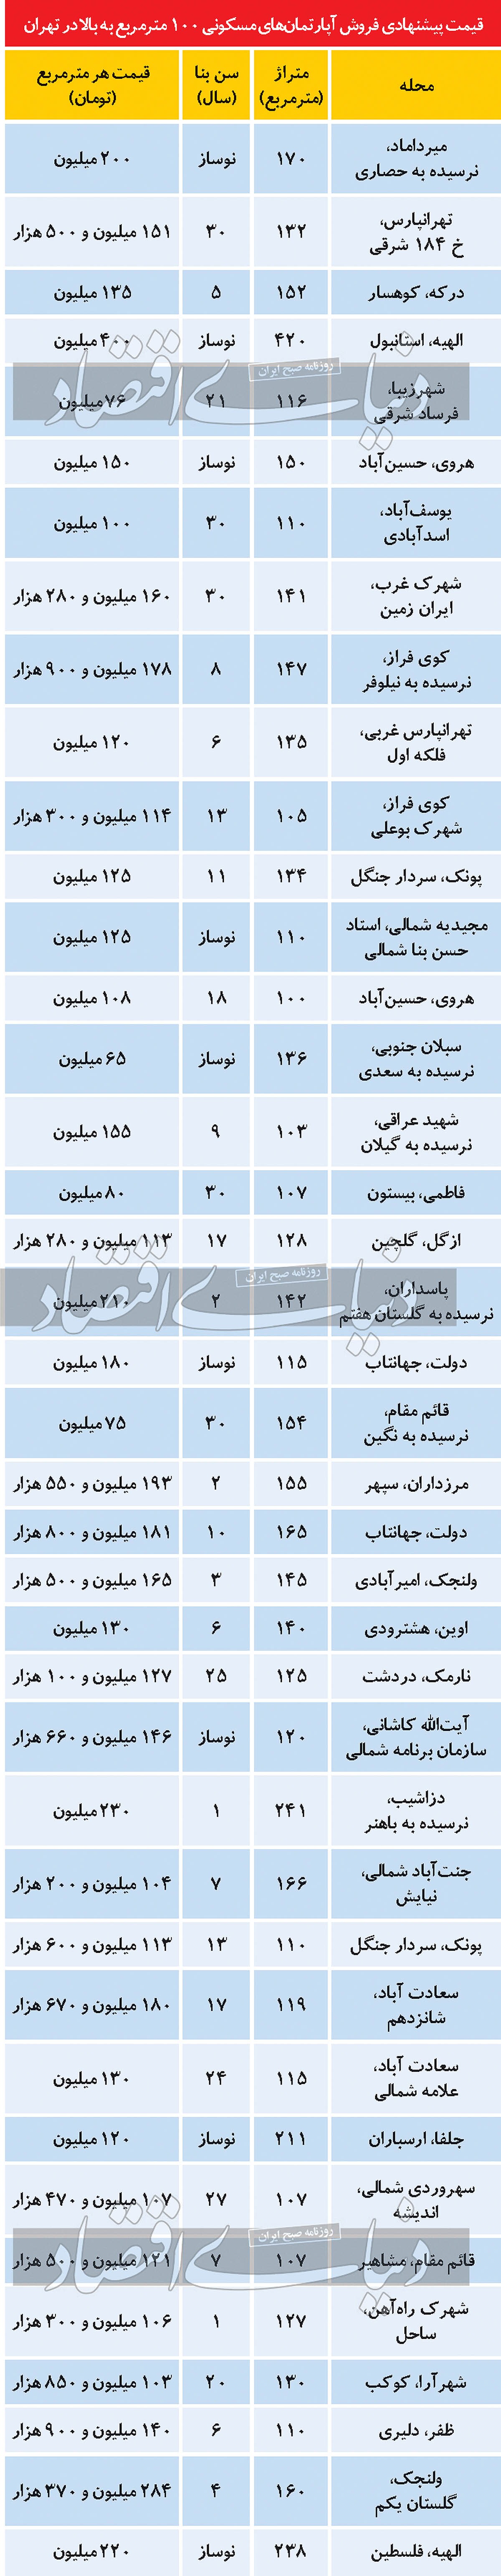 قیمت پیشنهادی فروش آپارتمان های بزرگ متراژ در تهران/ جدول